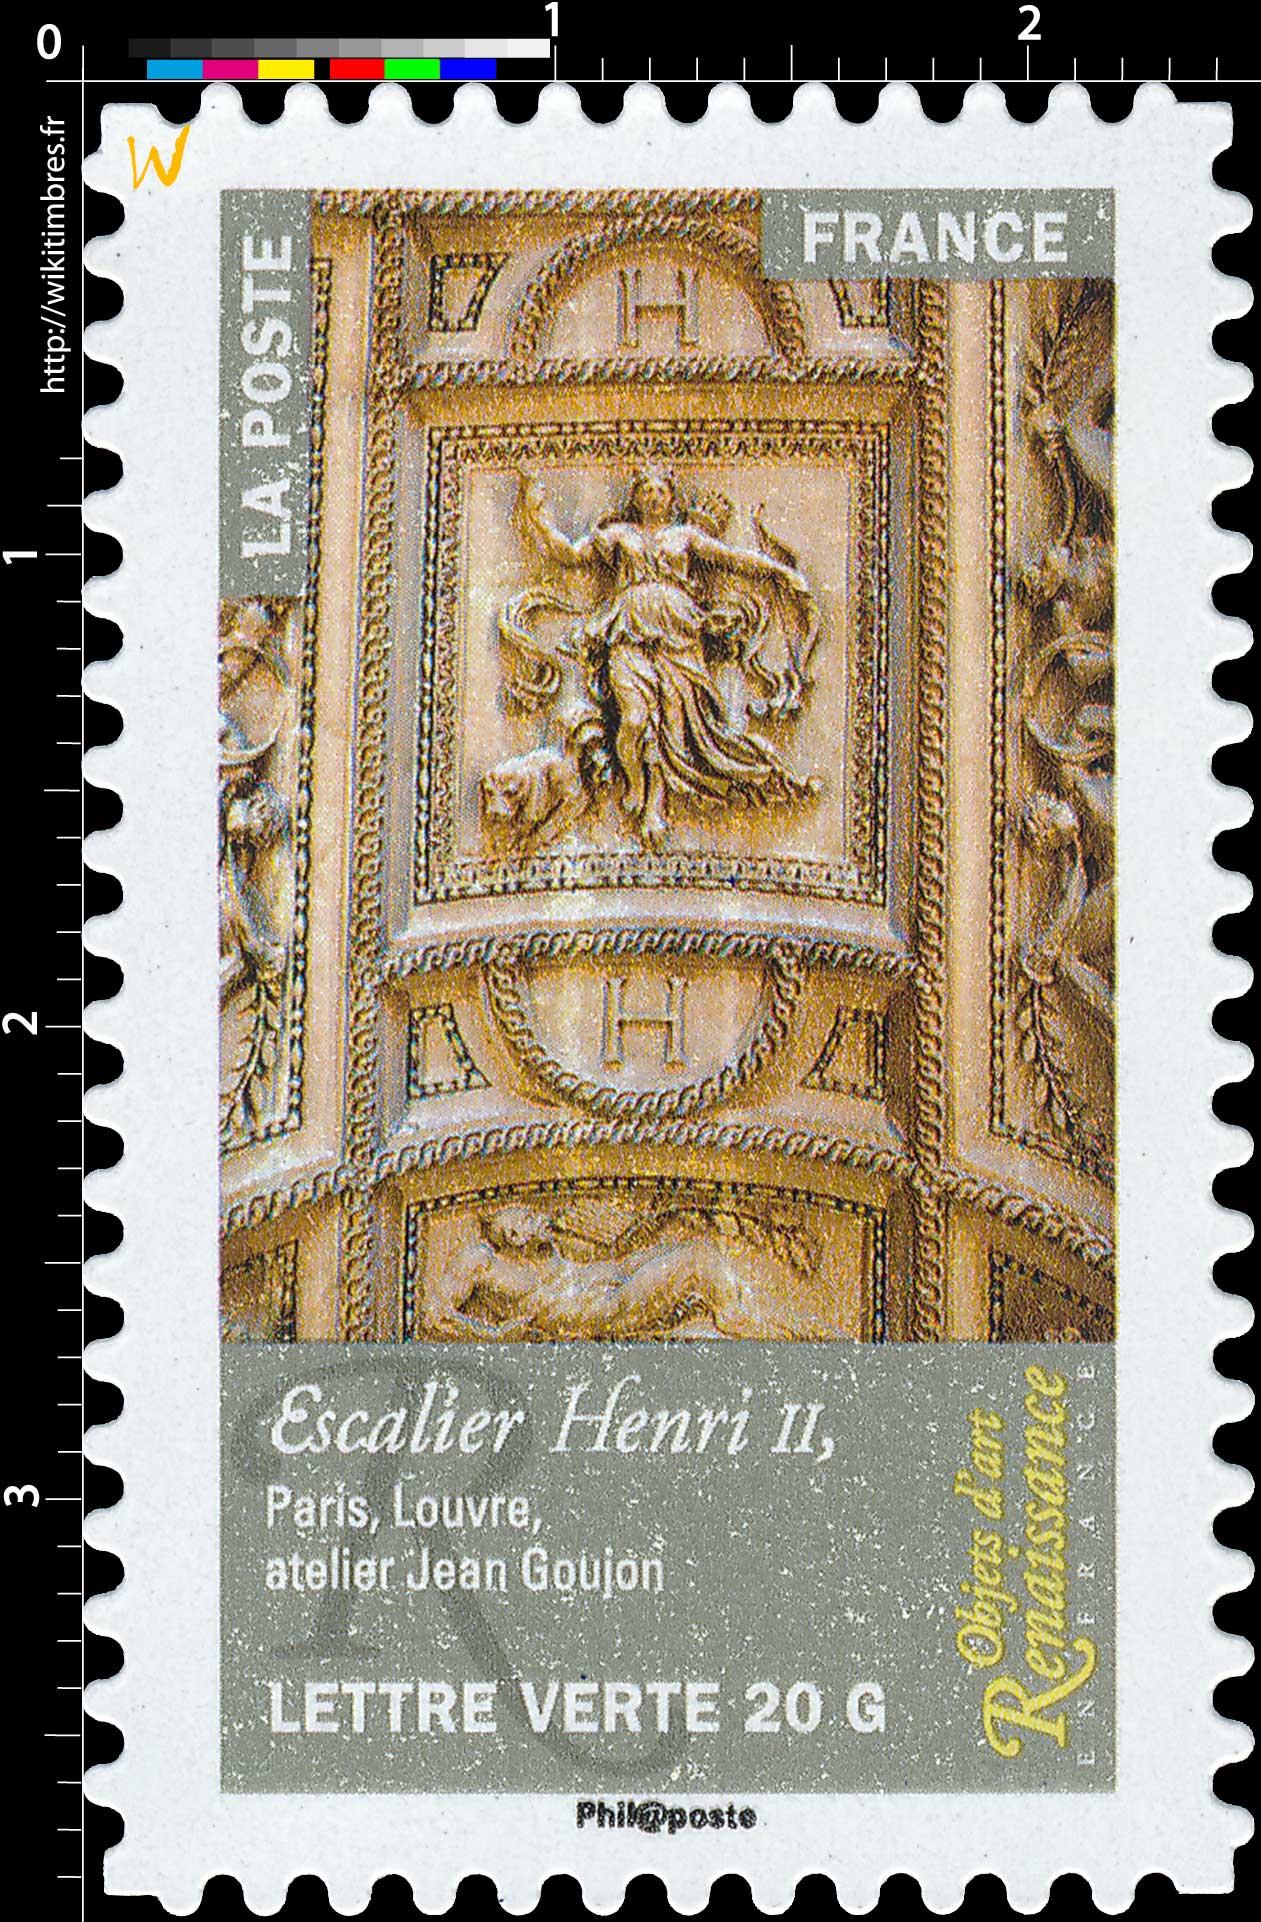 2014 Objets d'art  –  Renaissance en France  –  Escalier Henri II, Paris Louvre, Atelier Jean Goujon